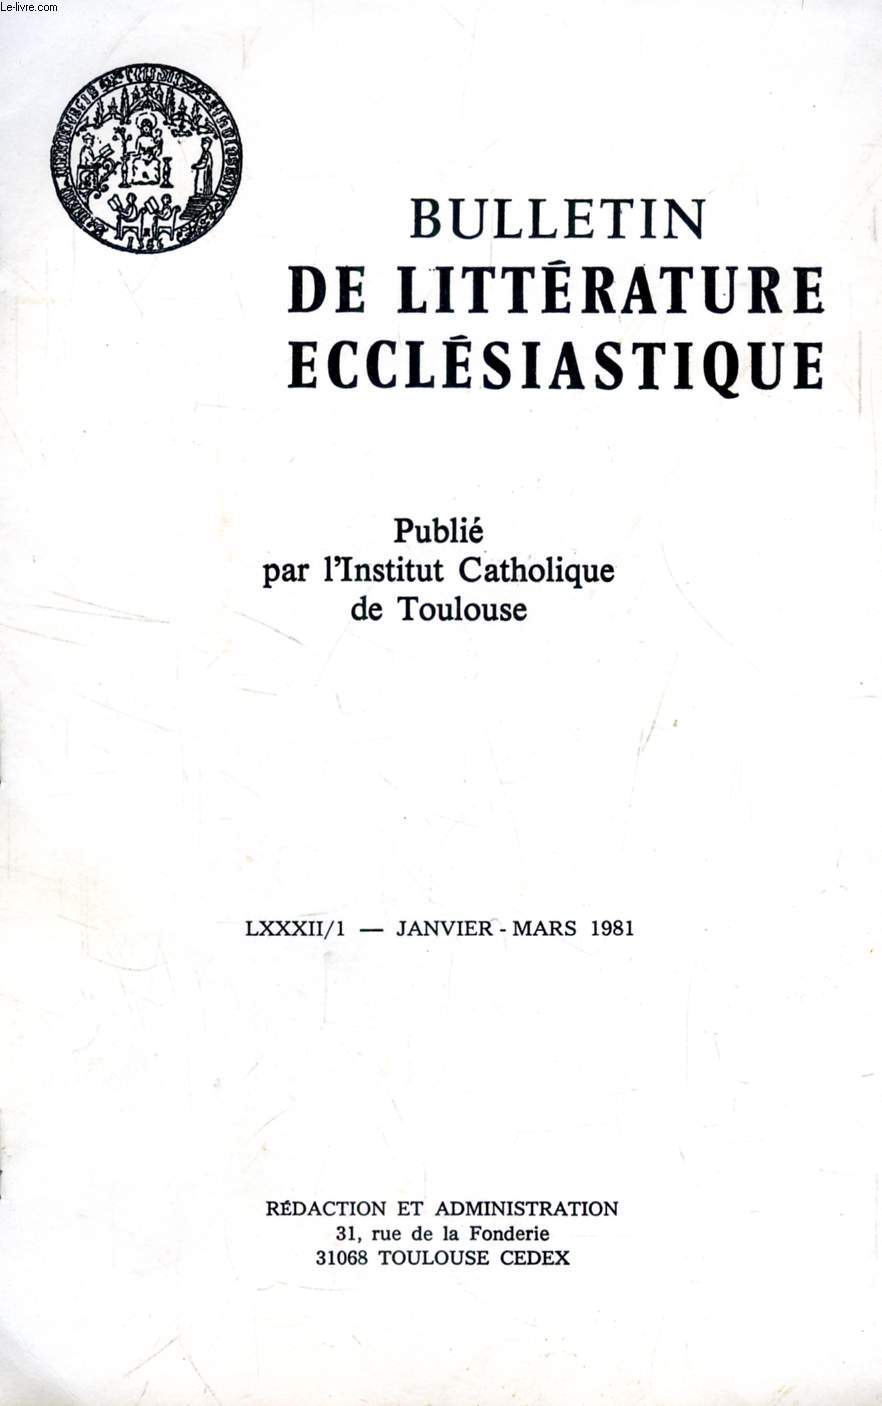 BULLETIN DE LITTERATURE ECCLESIASTIQUE, LXXXII/1, JAN.-MARS 1981 (EXTRAIT), SMARAGDE DE SAINT-MIHIEL CITE-T-IL DES TEXTES D'ORIGENE NON TRANSMIS PAR AILLEURS ?